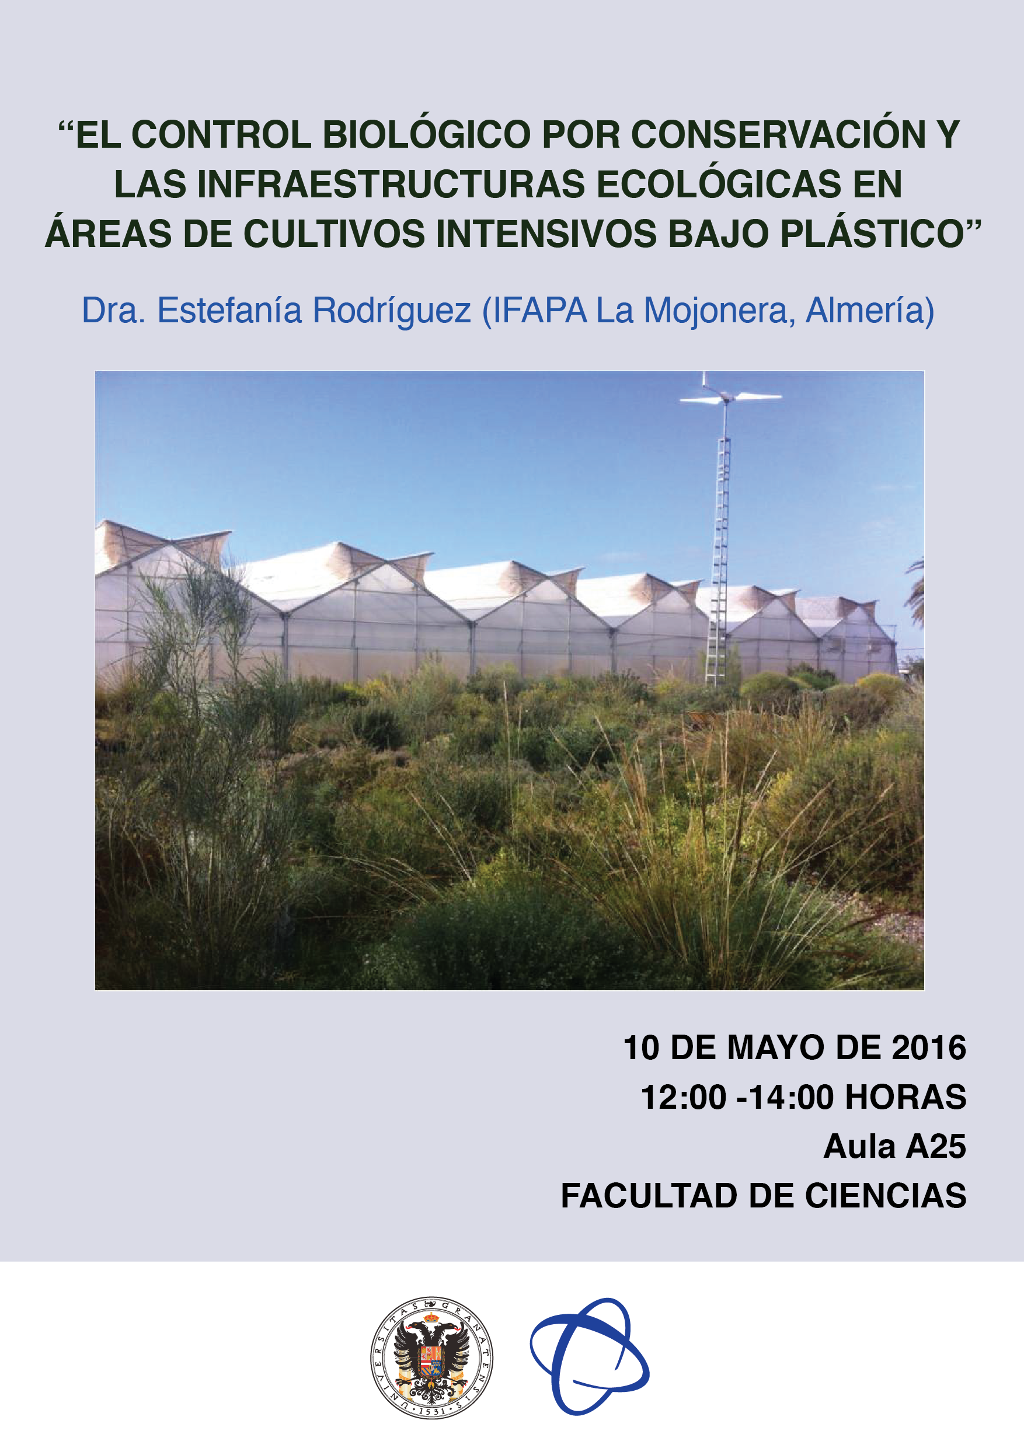 El control biológico por conservación y las infraestructuras ecológicas en áreas de cultivos intensivos bajo plástico